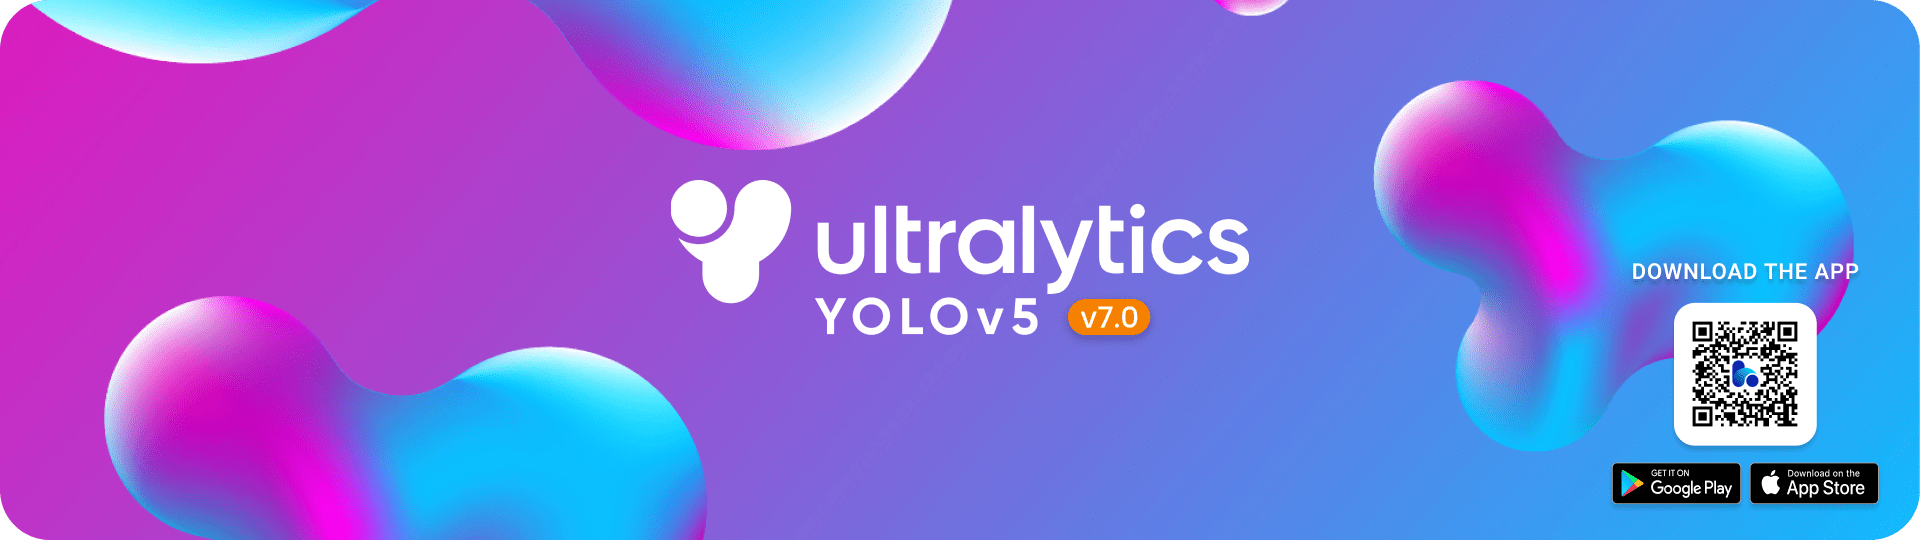 Ultralytics YOLOv5 banniÃ¨re v7.0